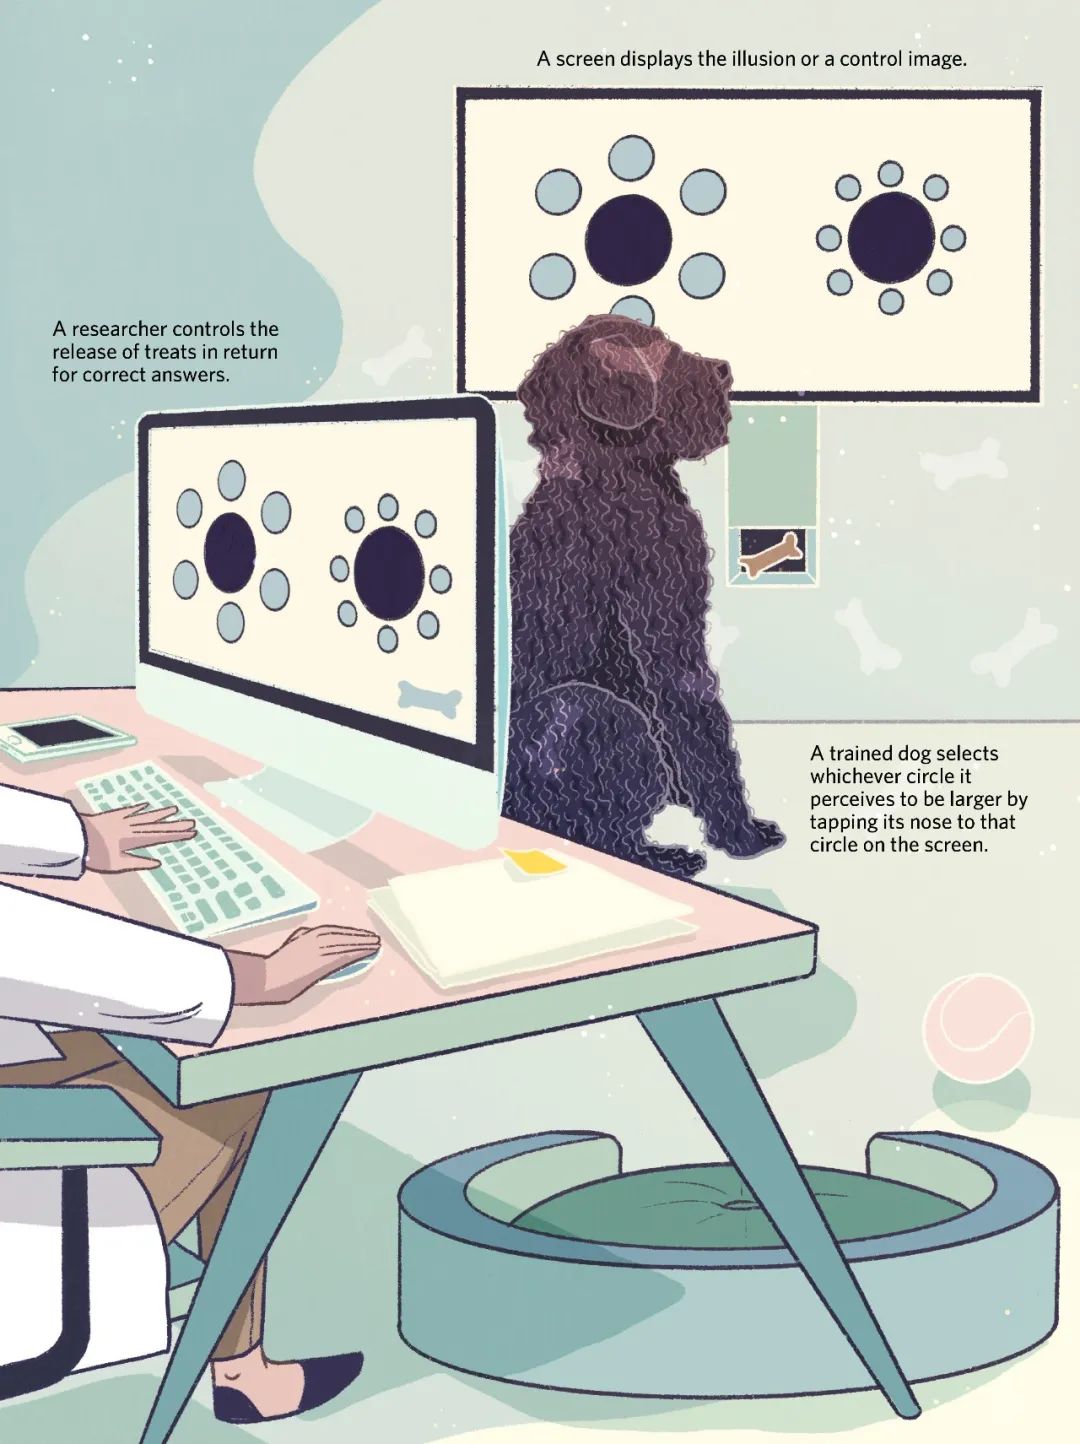 　　在2016年，萨拉·比索耶和她在澳大利亚拉筹伯大学的同事发表了一项实验，其中使用了上图中的装置。他们训练狗狗选择看上去更大的黑圆，并发现这些狗狗都一致选择了被较大的蓝圆环绕的黑圆。这个效果与在人类身上看到的恰恰相反，说明狗和人的视觉感知可能在这个错觉的某些方面存在差异。